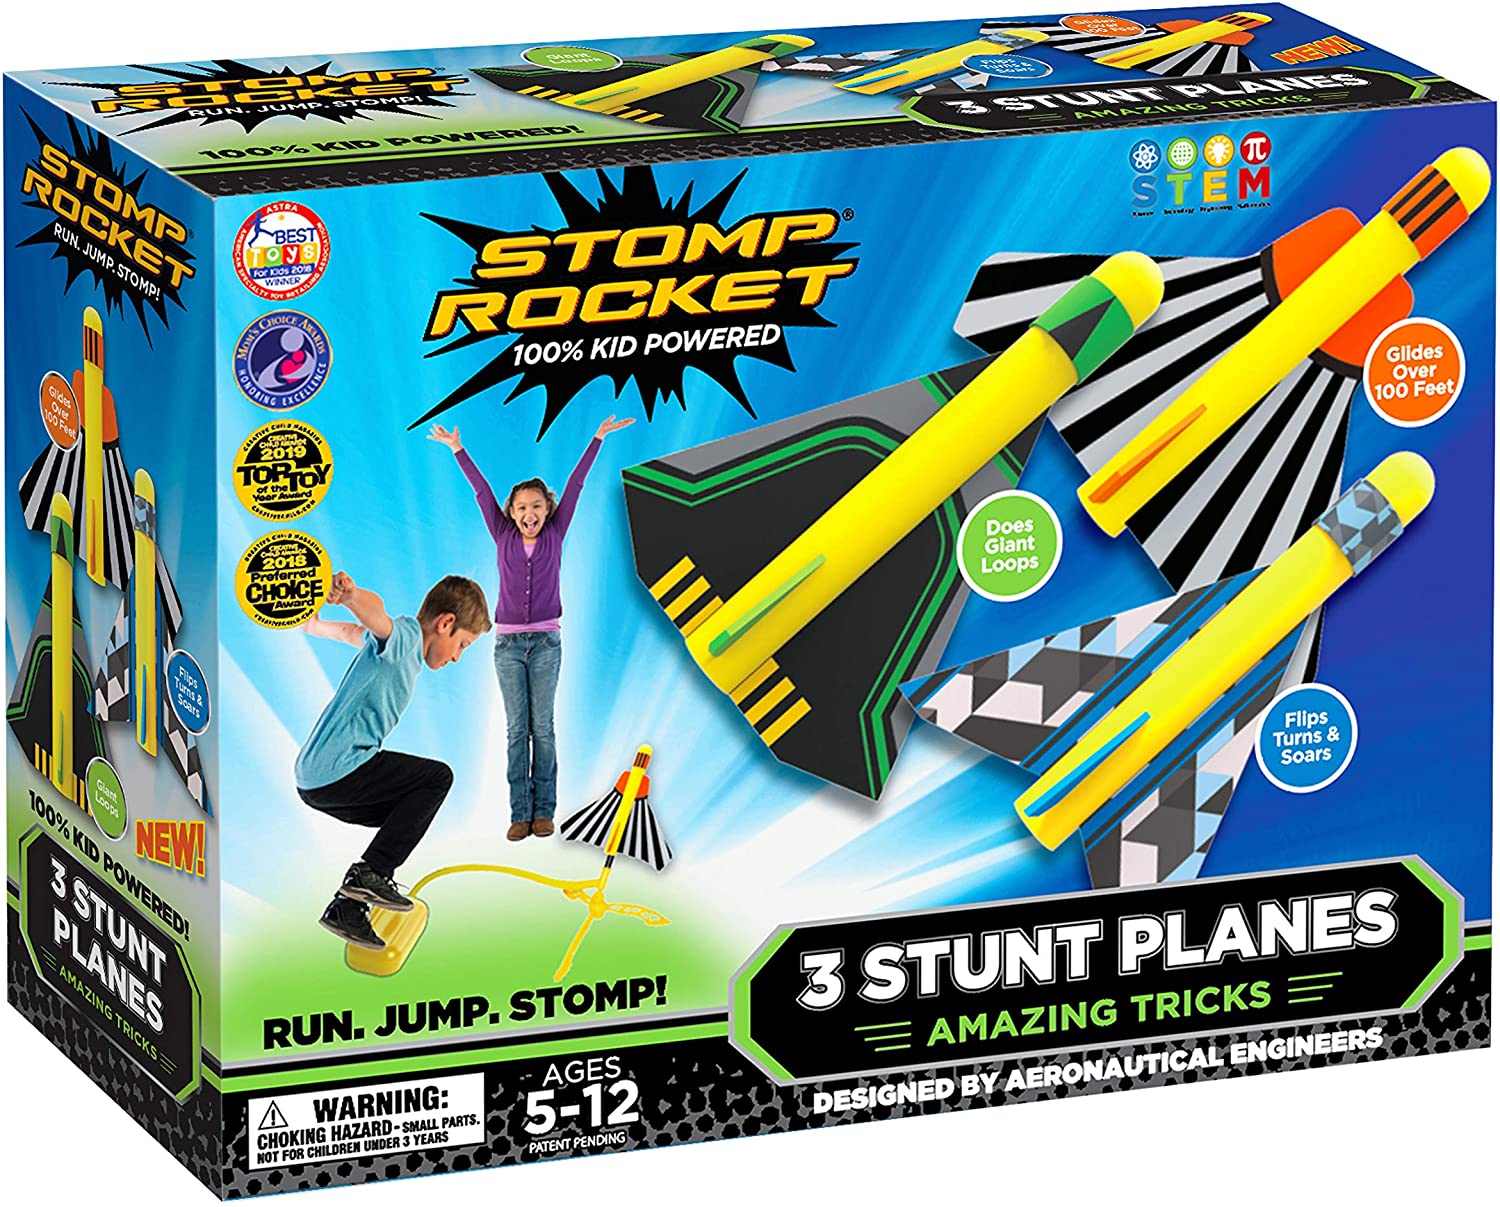 Ab 5 Jahren Druckluft Rakete Stomp Rocket Stunt Planes Stunt Flugzeuge 